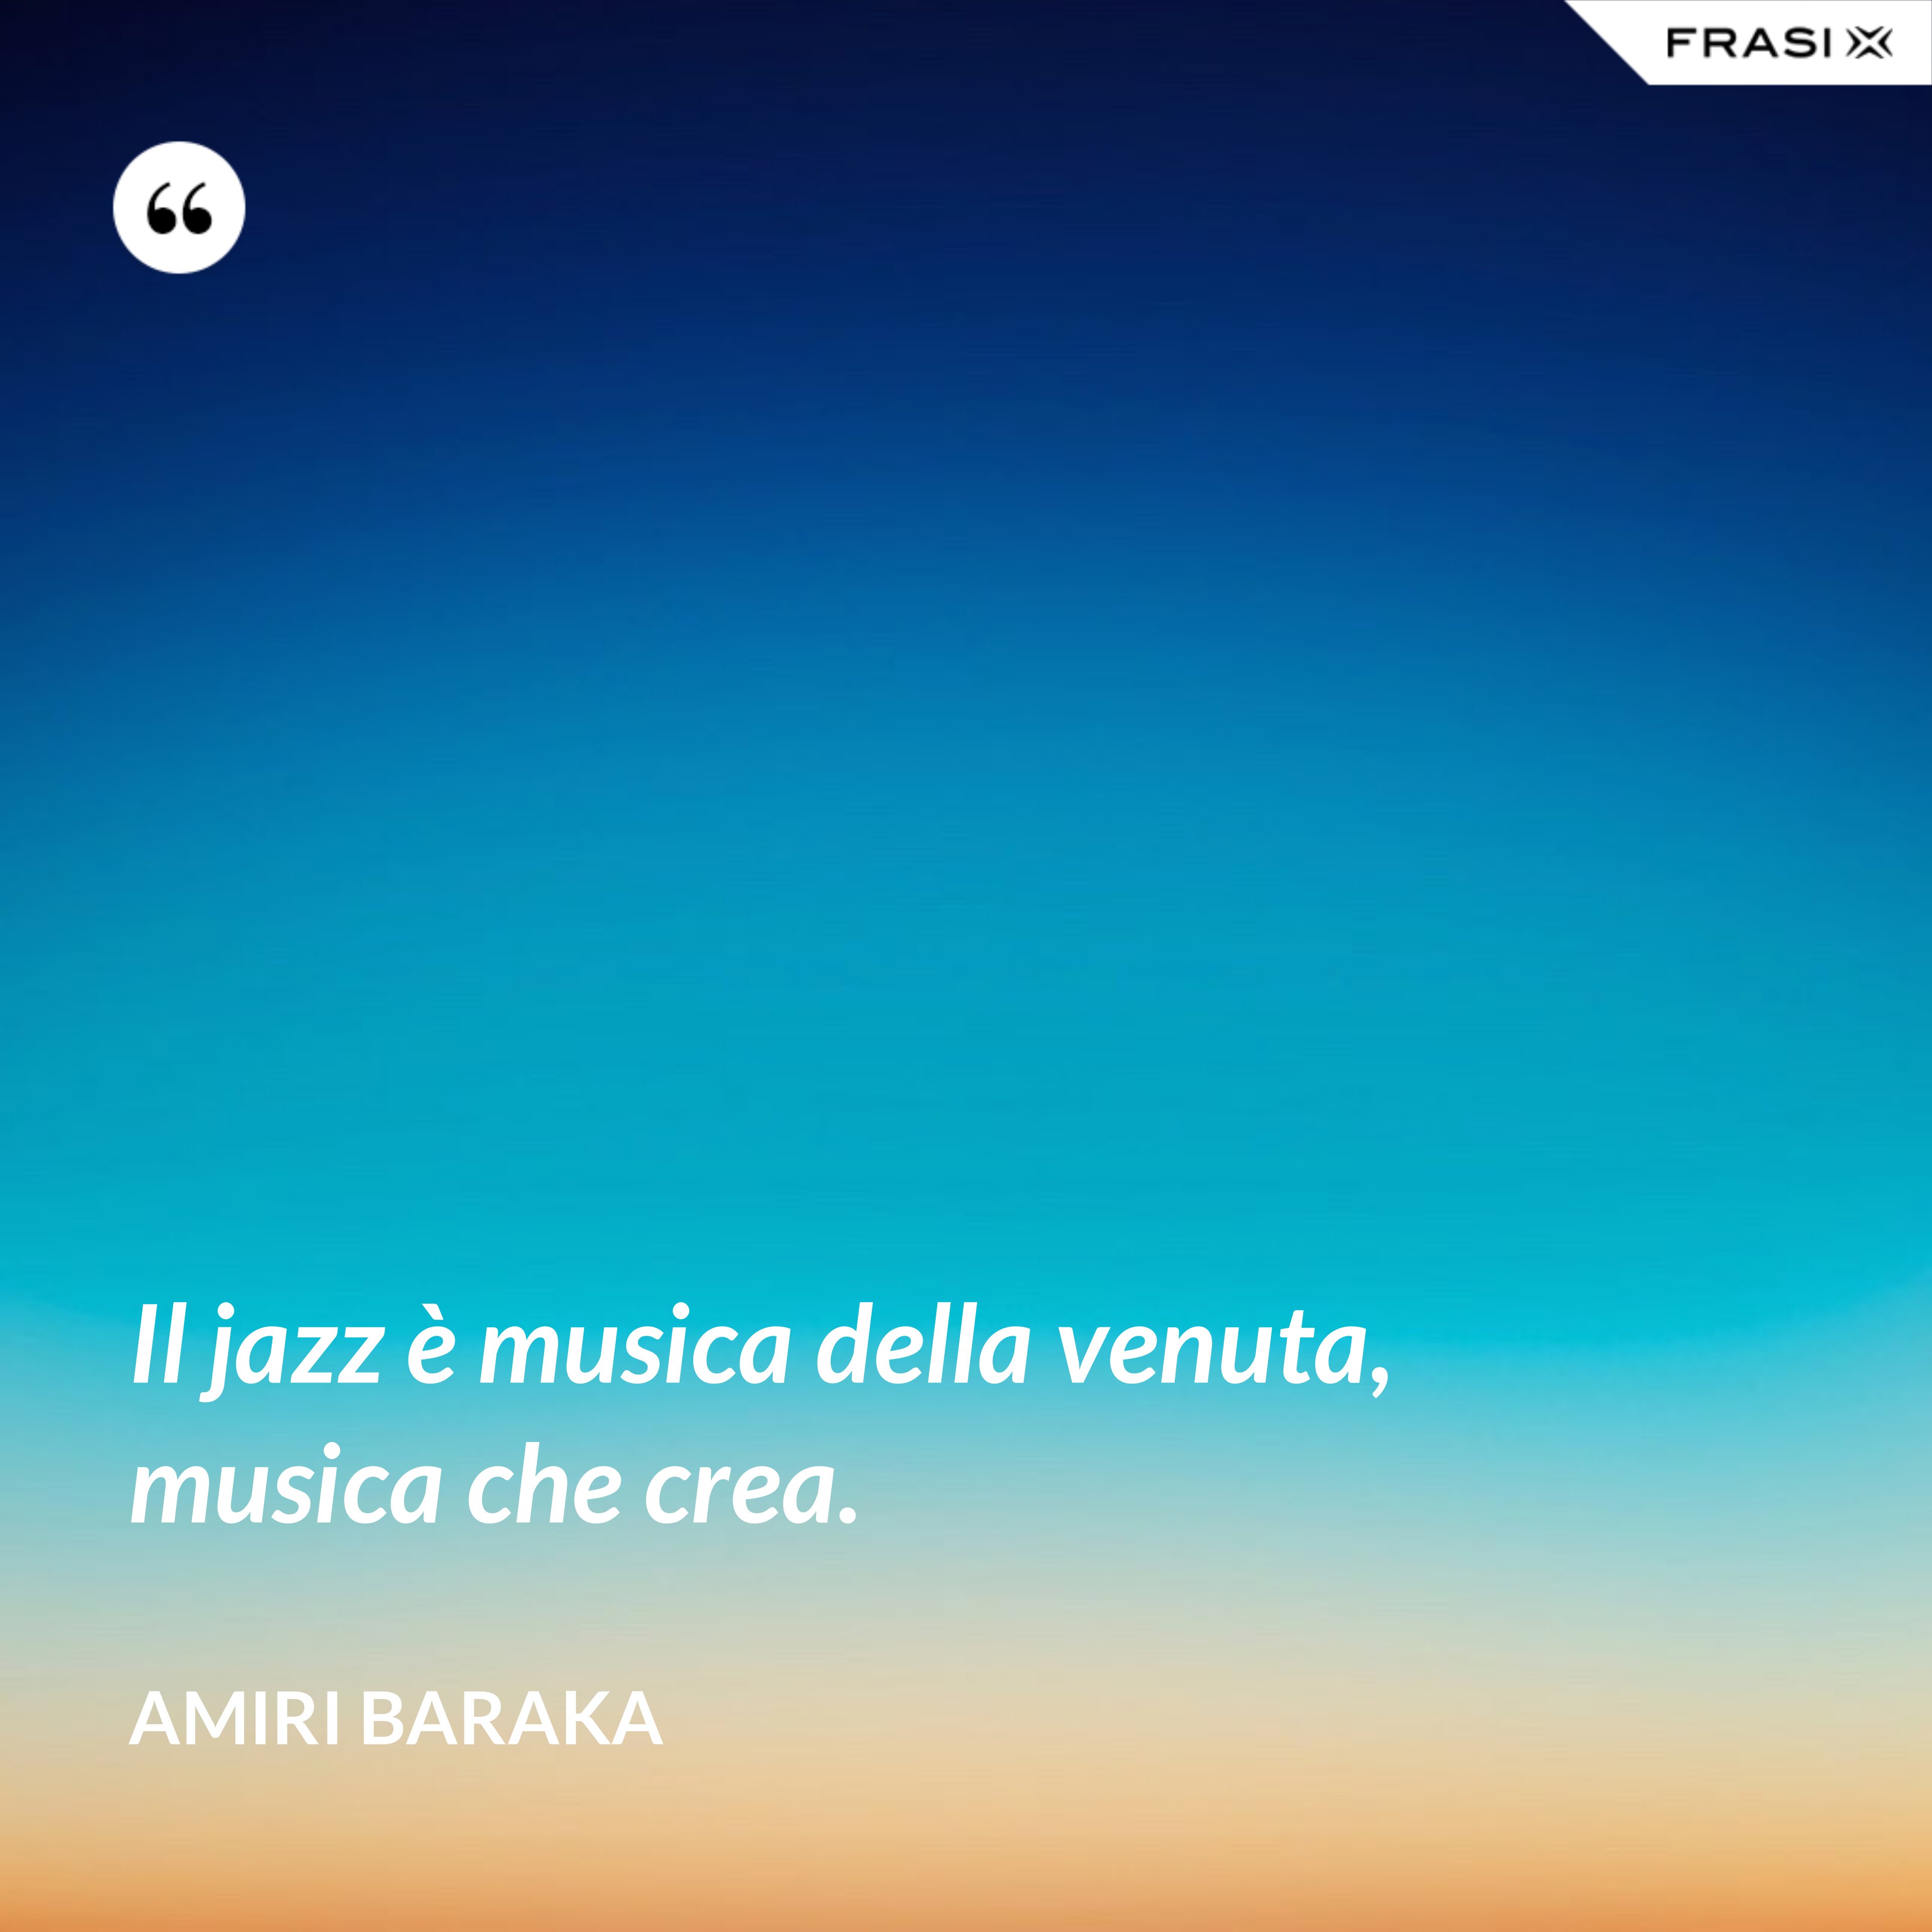 Il jazz è musica della venuta, musica che crea. - Amiri Baraka